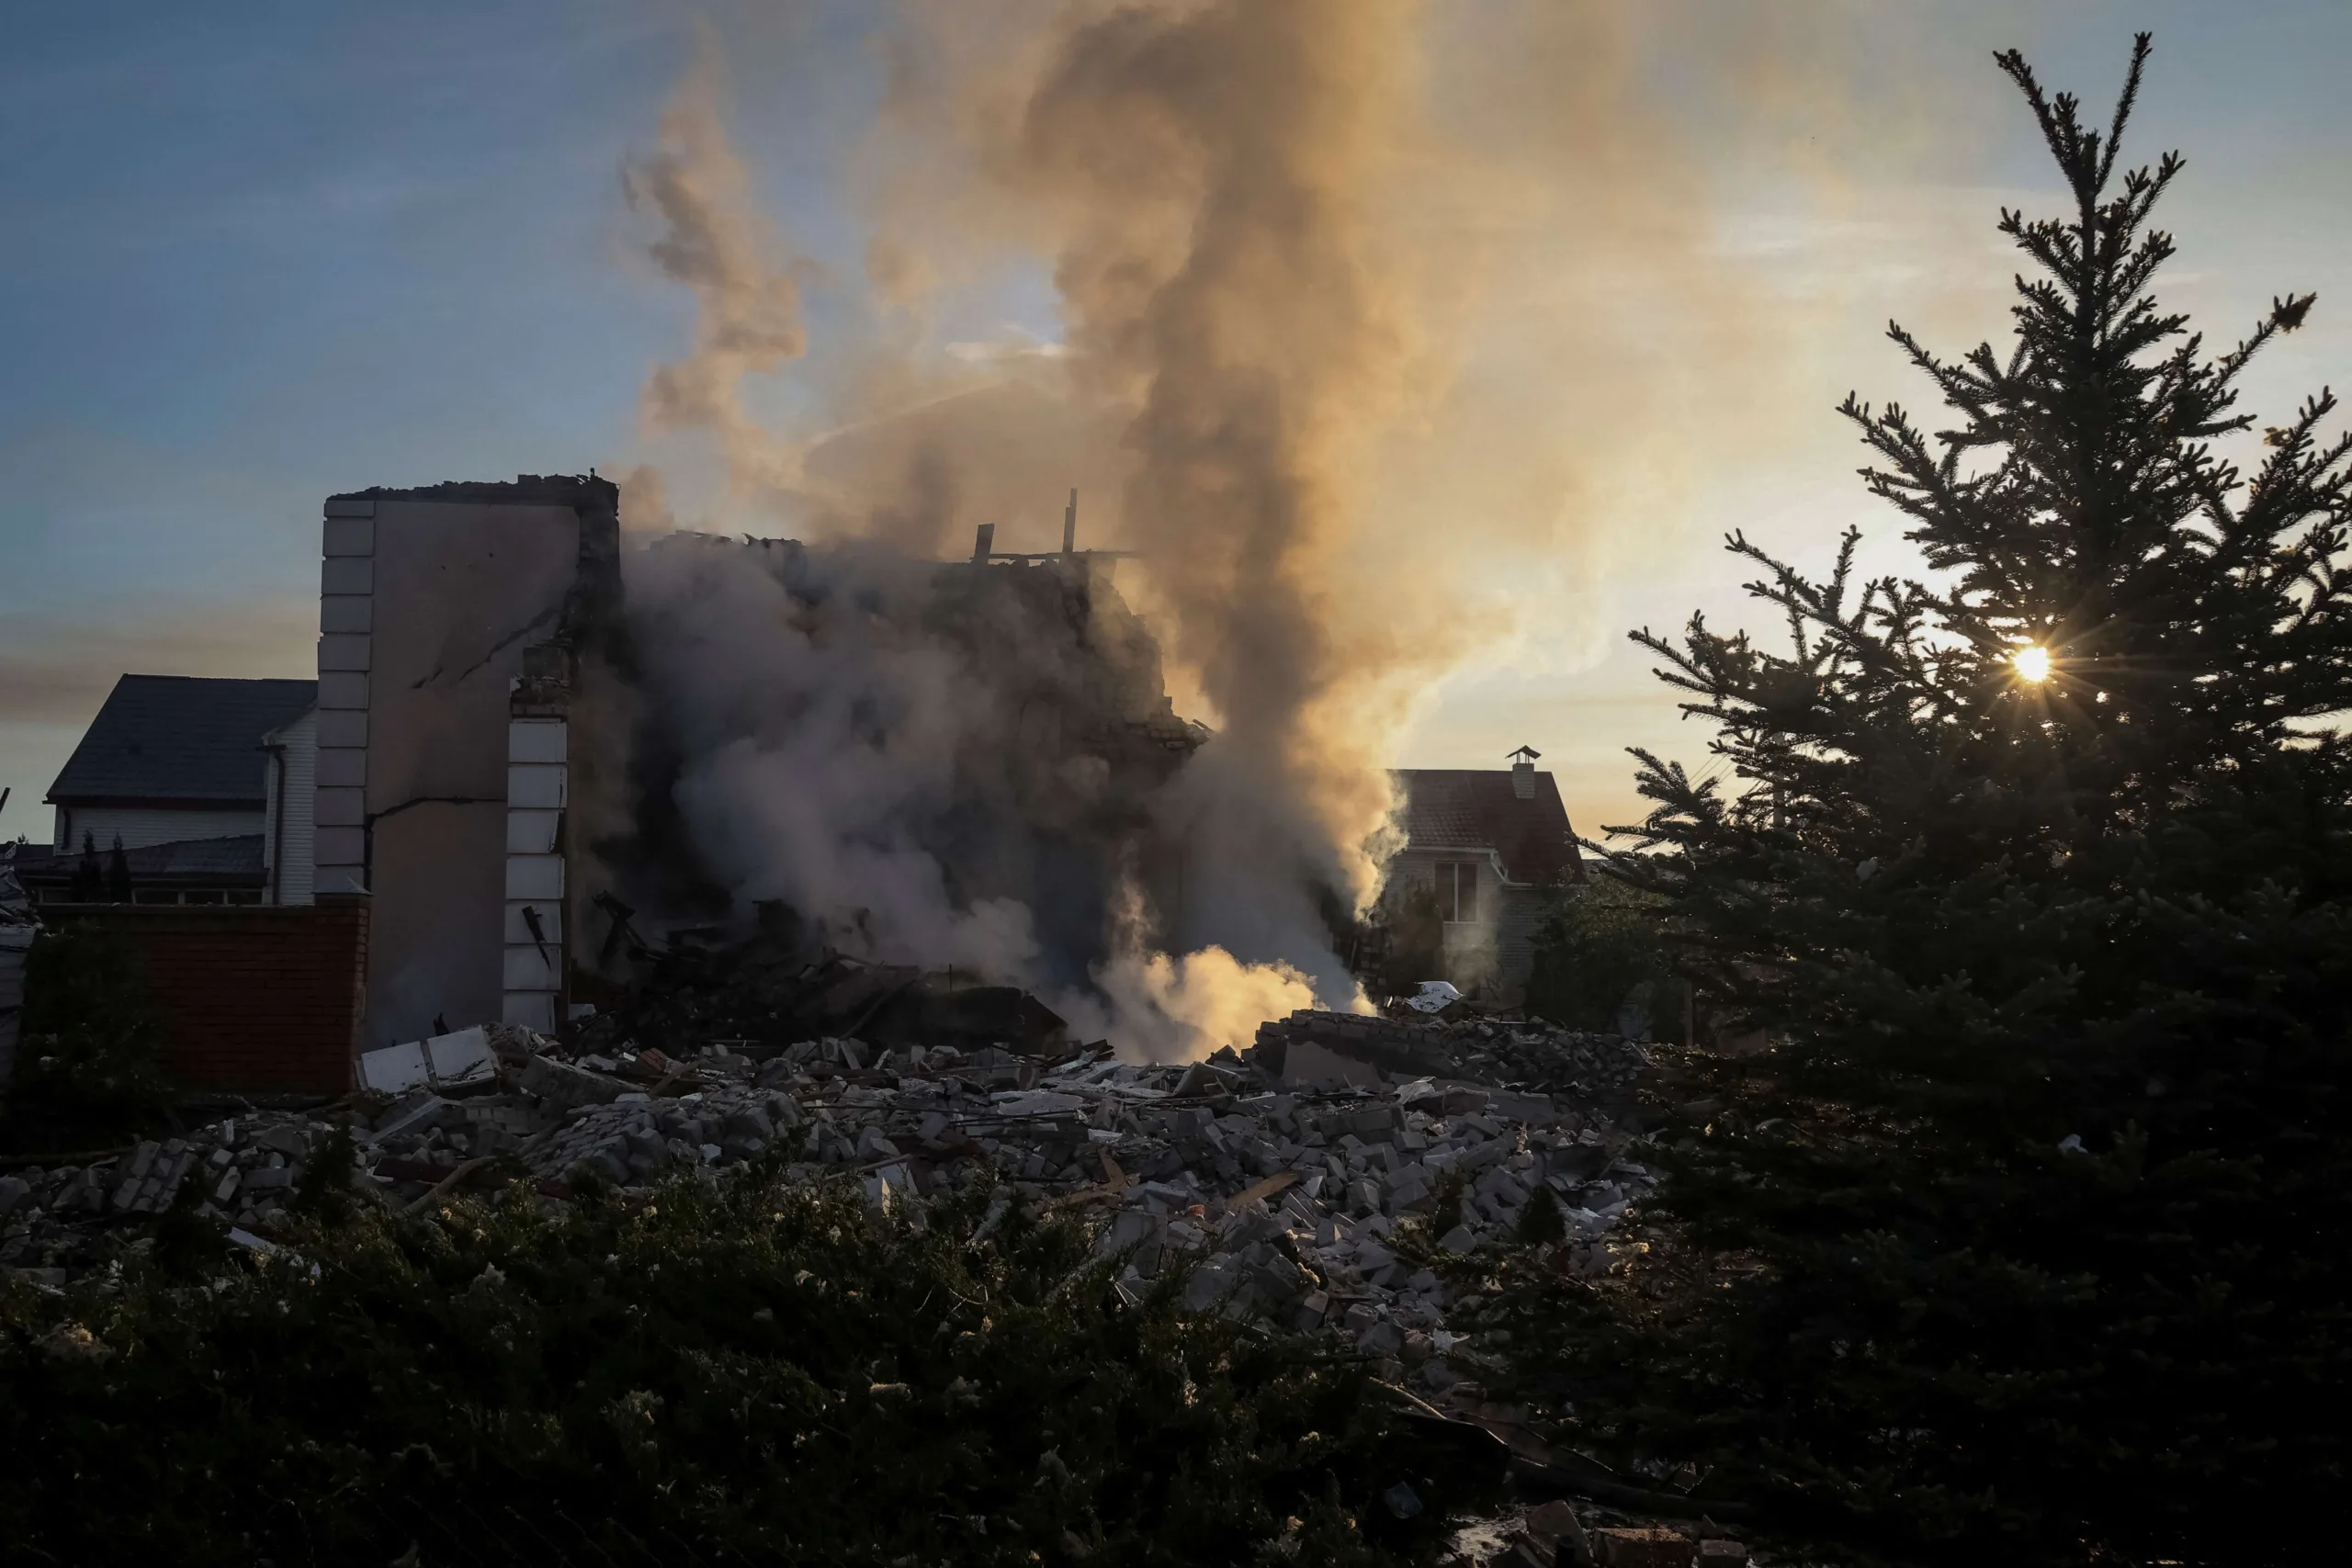 Ataque russo com míssil incendeia casas na cidade ucraniana de Kharkiv